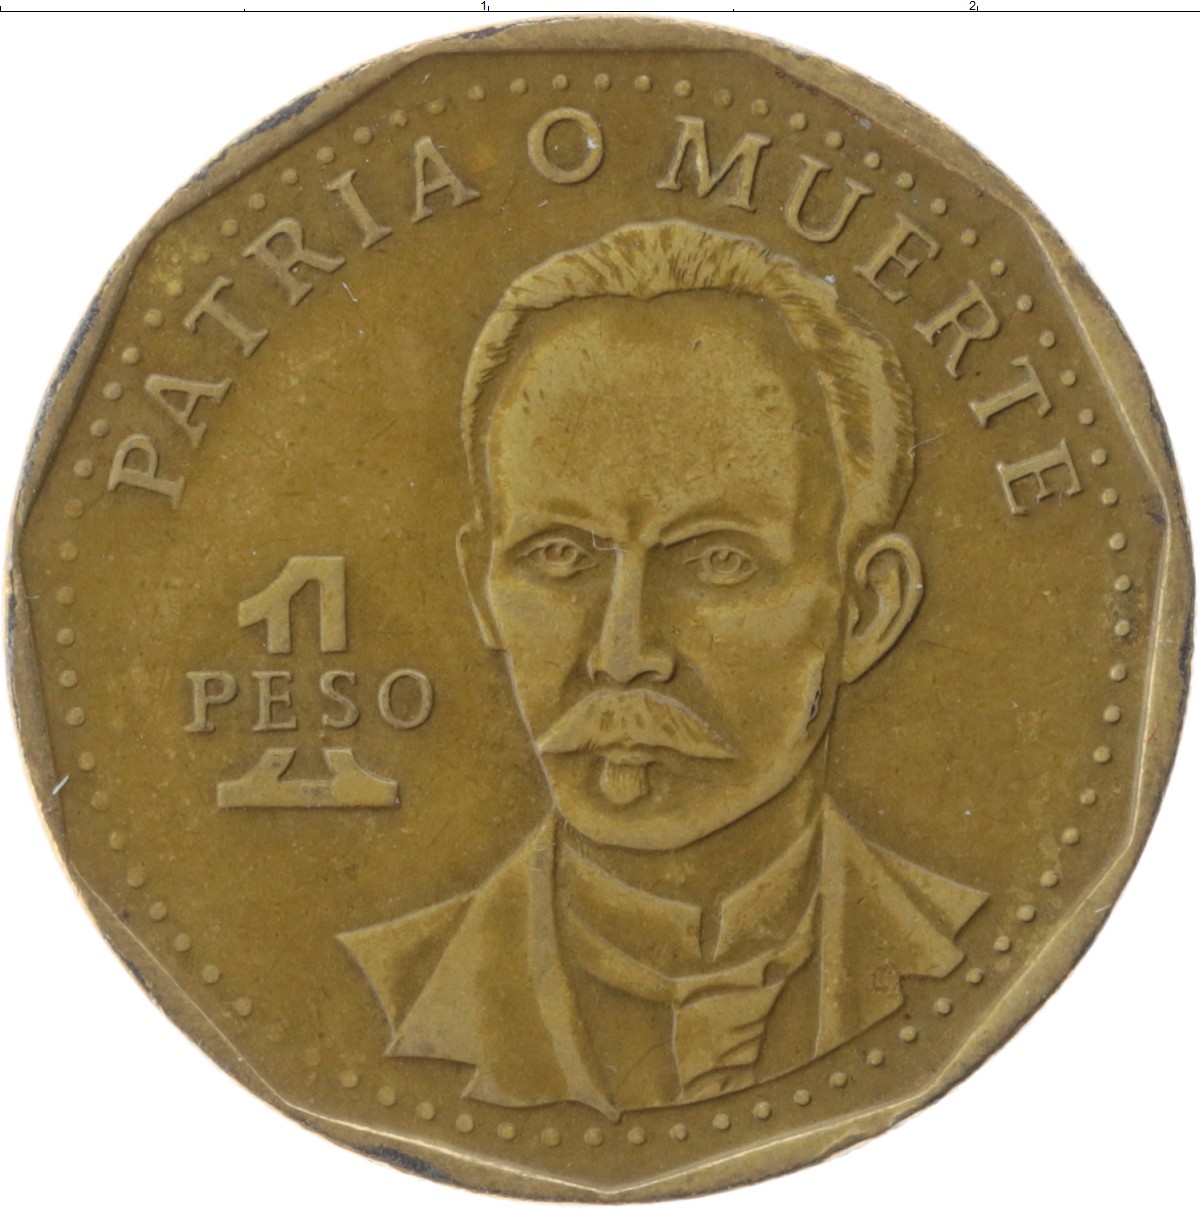 Кубинская монета. Монета 1 песо. Куба 1 песо 1992 г. Хосе Марти. Куба - 1 песо (1994 г.). Монета 1 песо Куба.